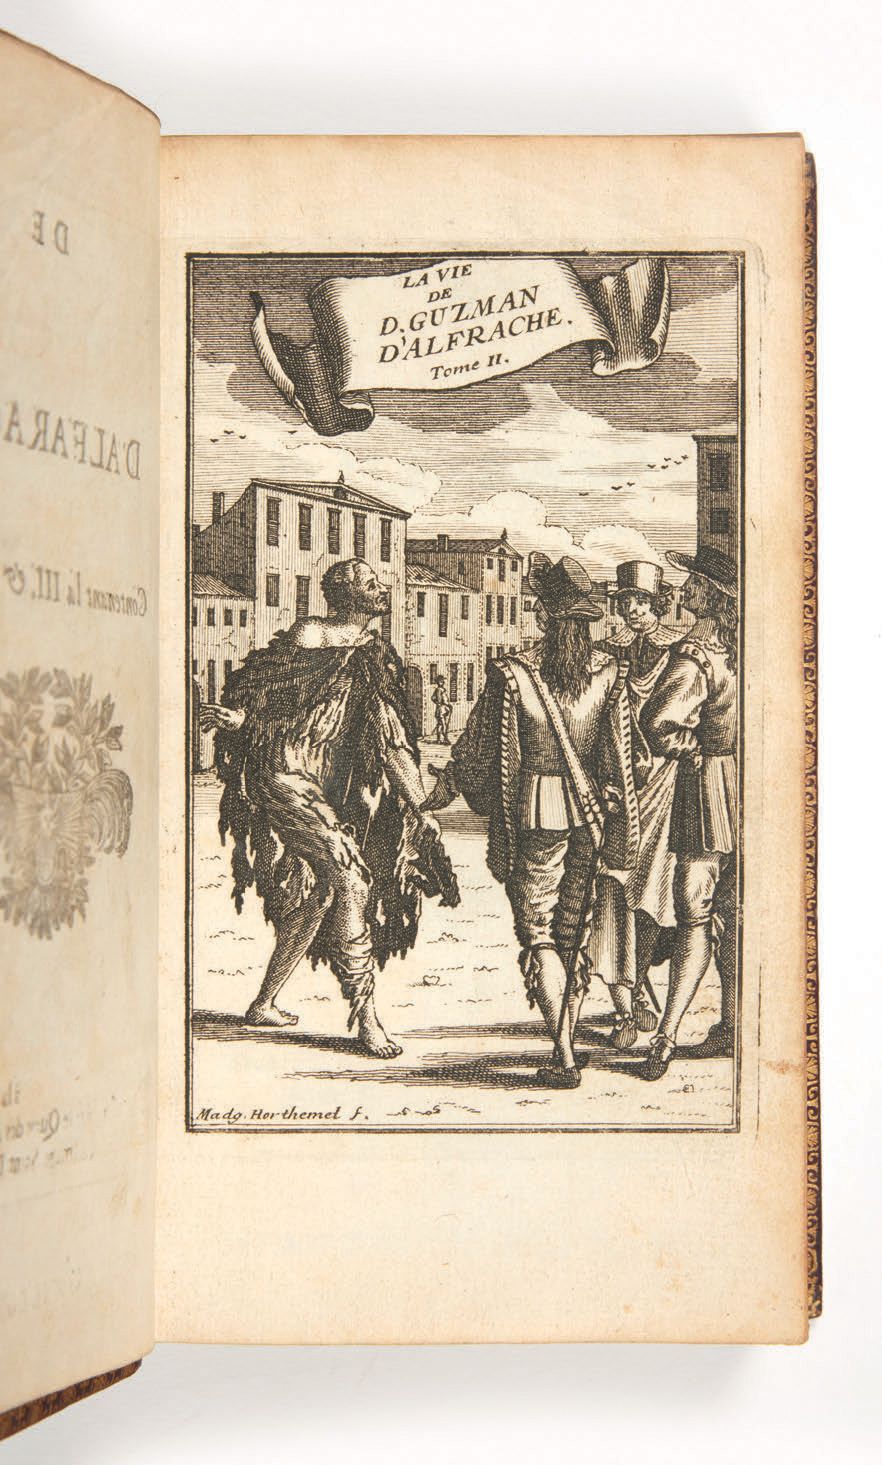 [ALEMÁN, Mateo] La Vie de Guzman d'Alfarache
Paris, Pierre Ribou, 1709
RARE ÉDIT&hellip;